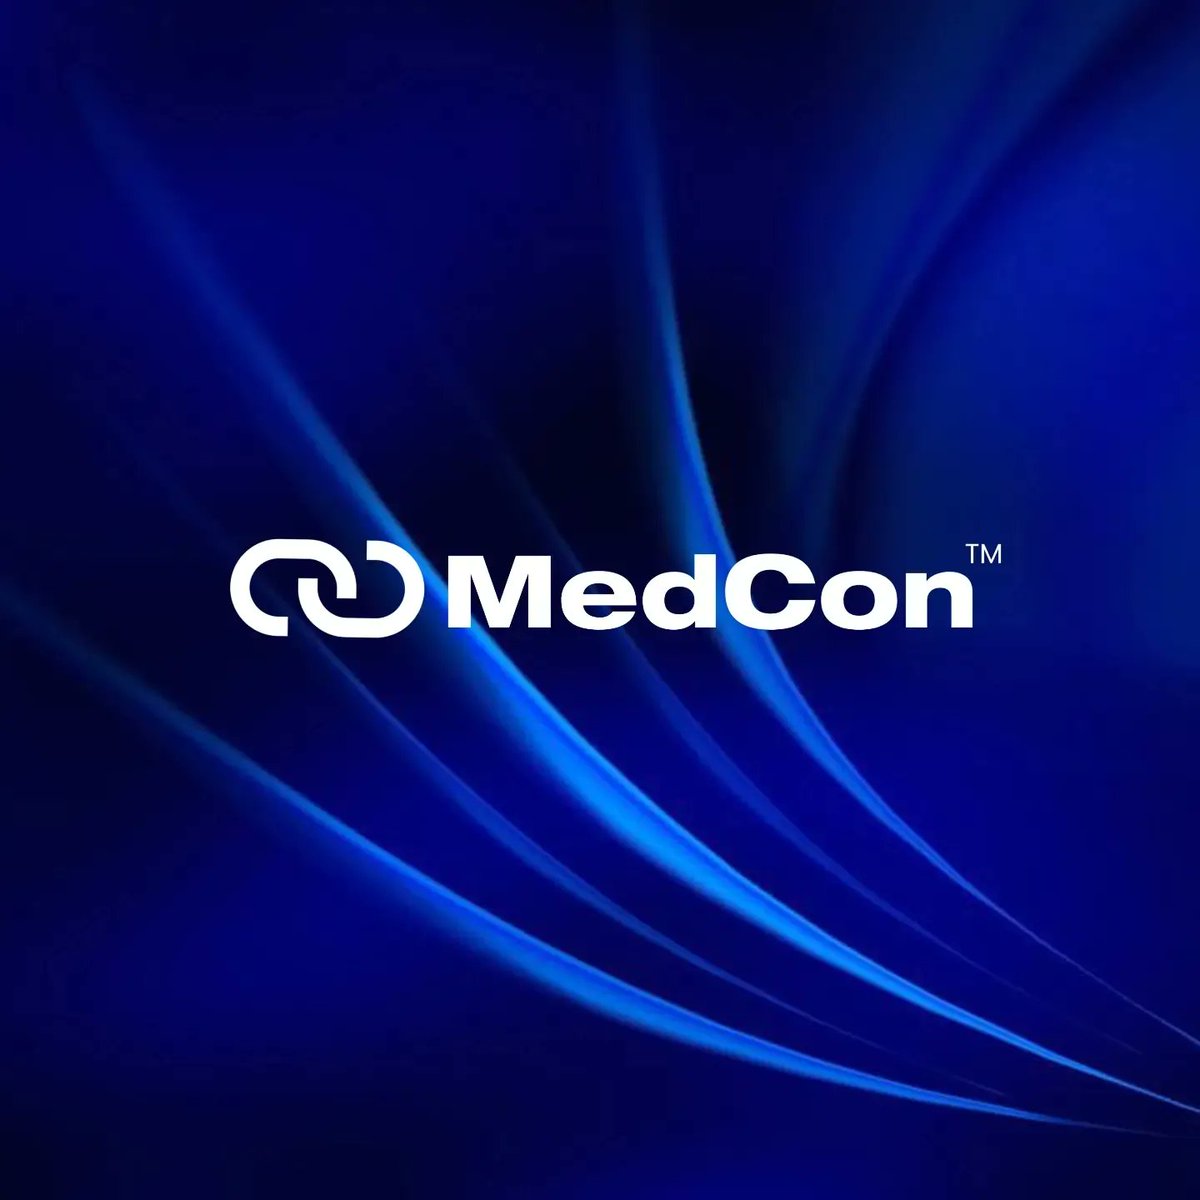 Logo Design for MedCon

#logo #logodesign #logodesigner #logodesigninspiration